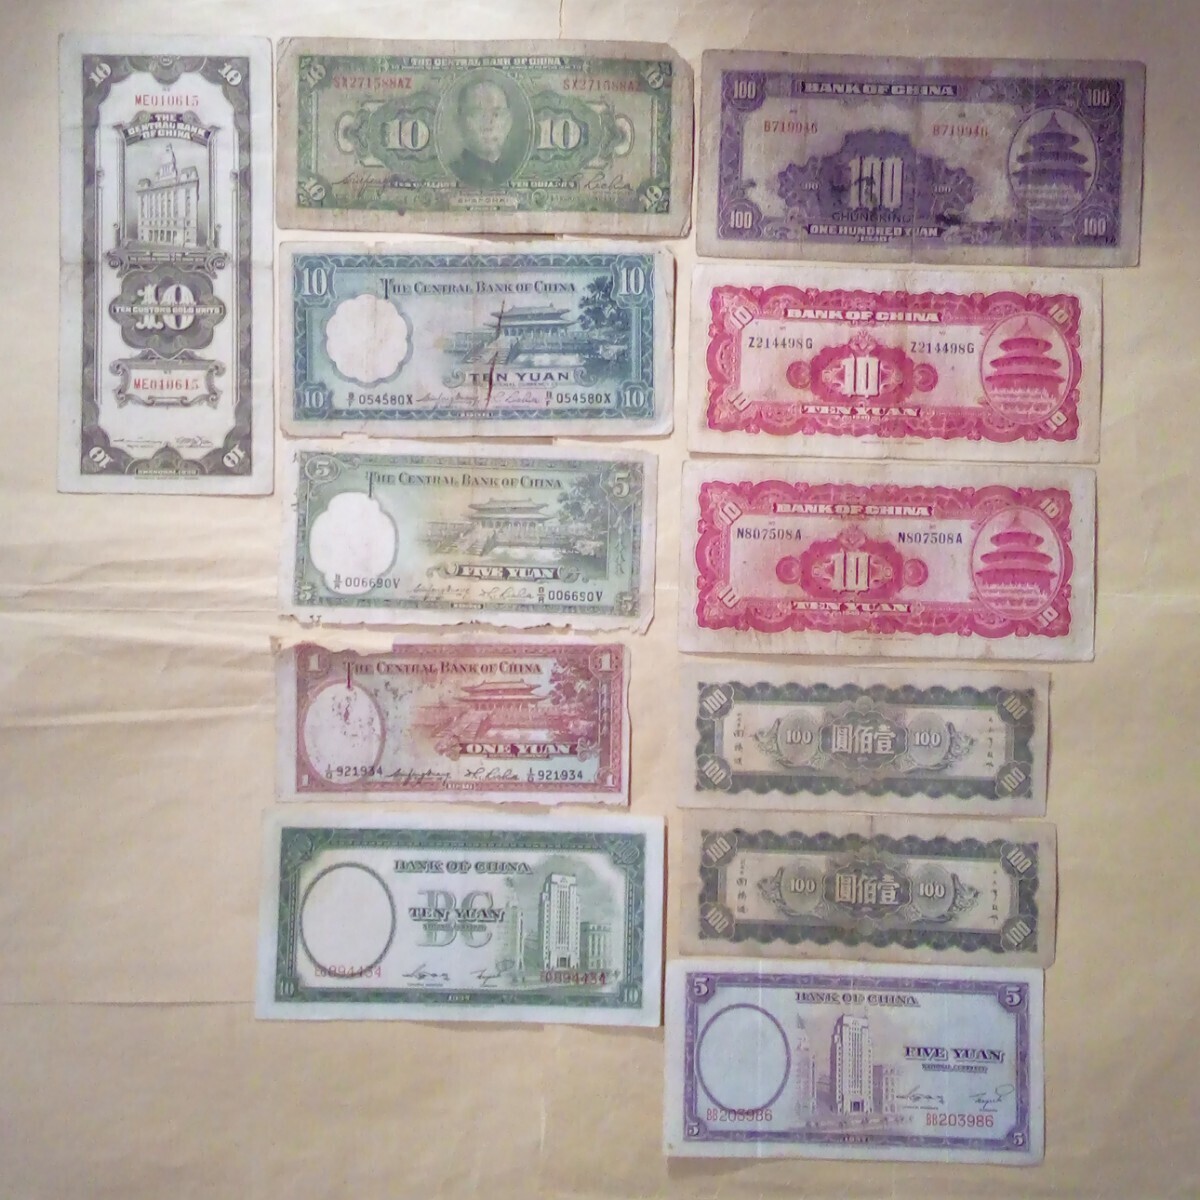 中華民国国民政府時代古紙幣12枚_画像2